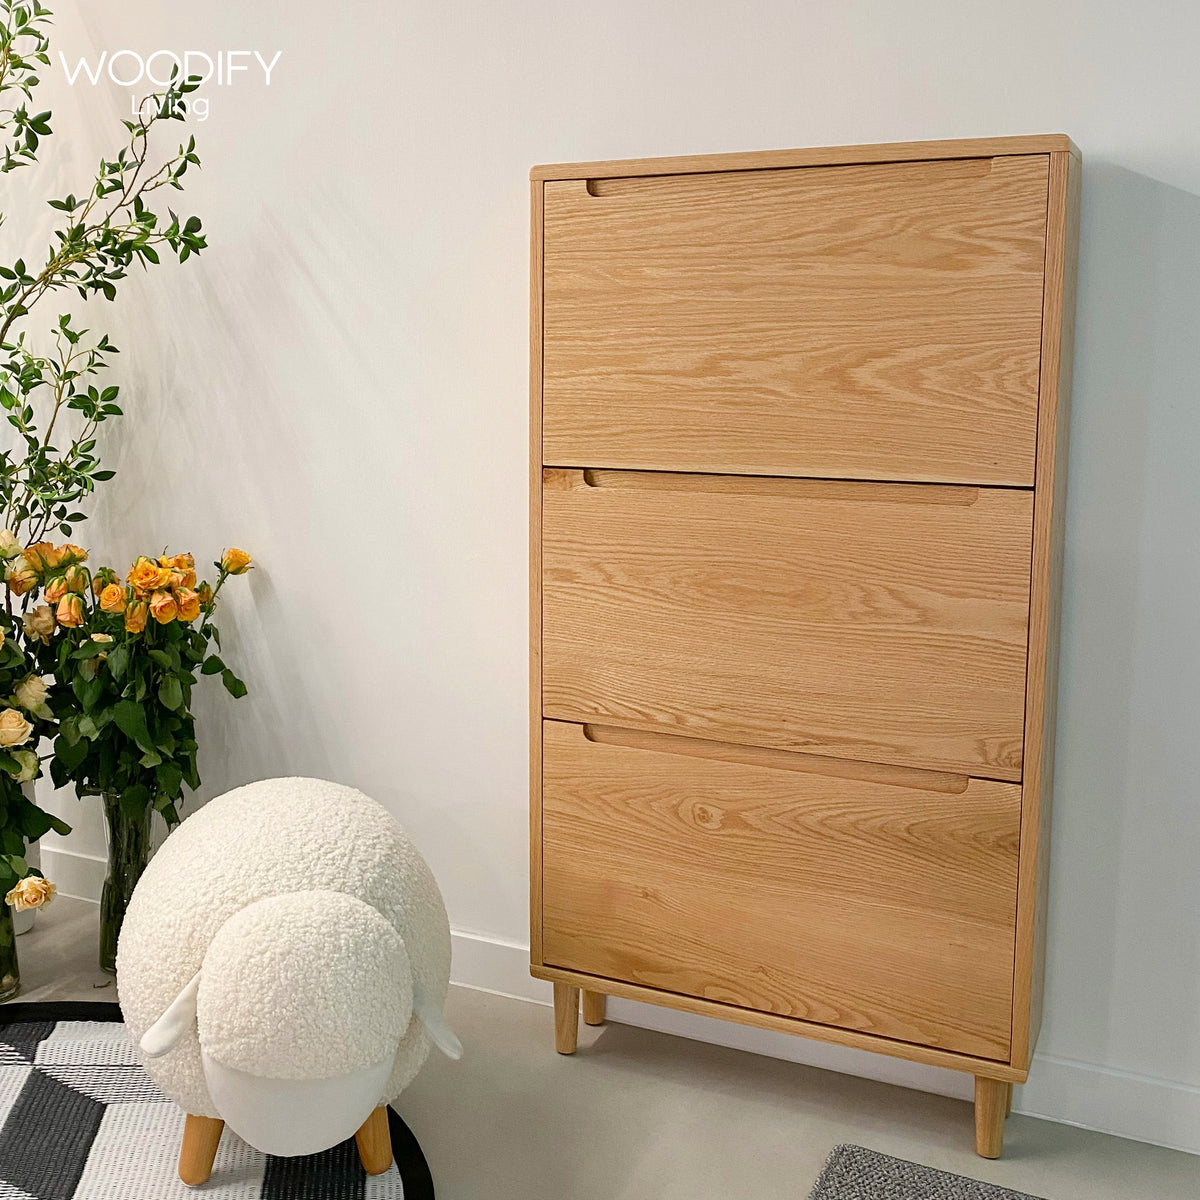 PERD Wall Shoe Cabinet - Oak wood